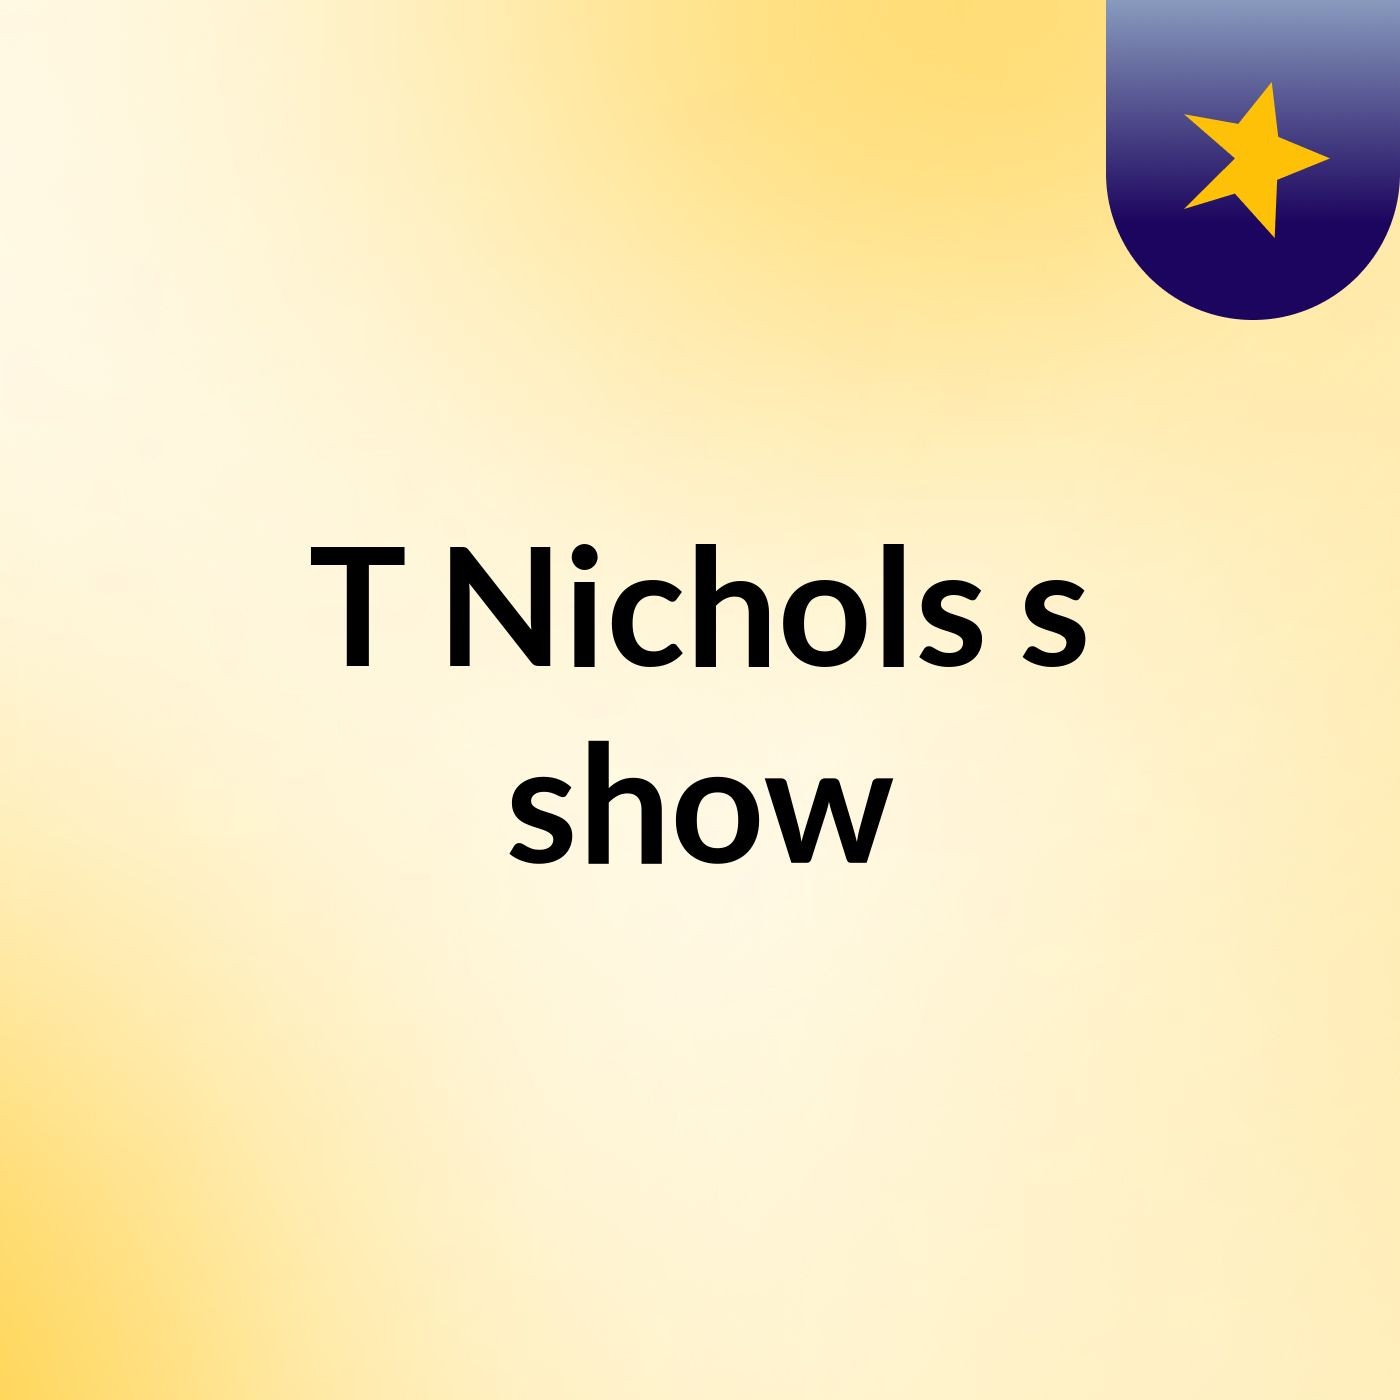 T Nichols's show